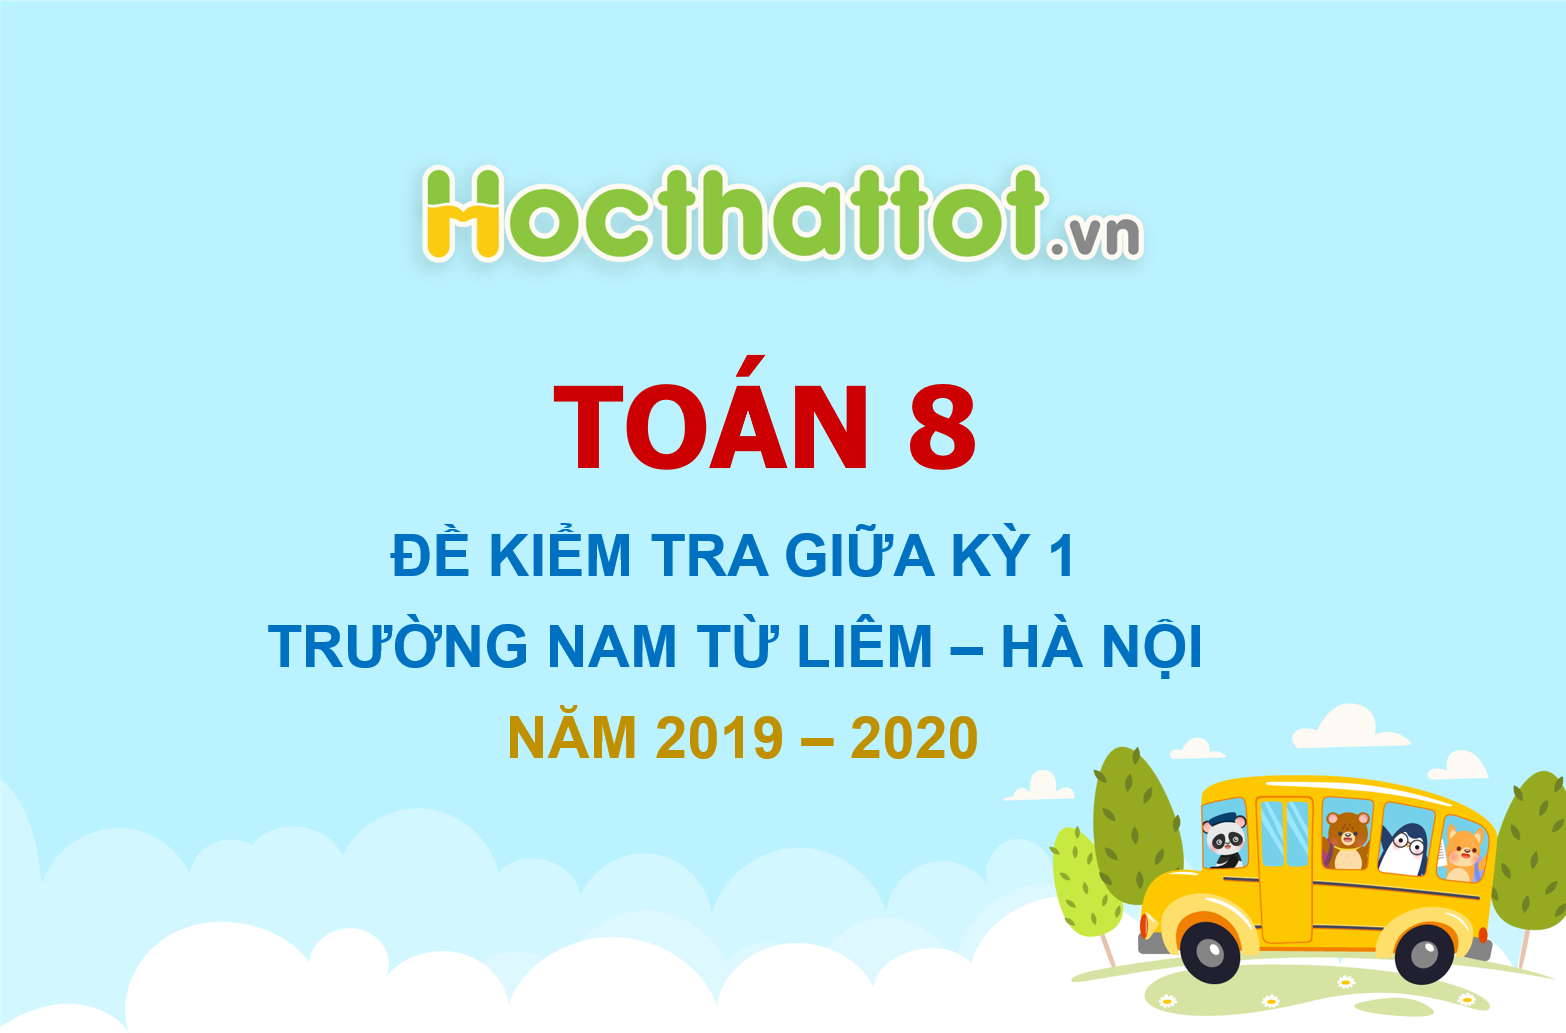 de-kiem-tra-giua-ky-1-toan-8-nam-2019-2020-truong-nam-tu-liem-ha-noi